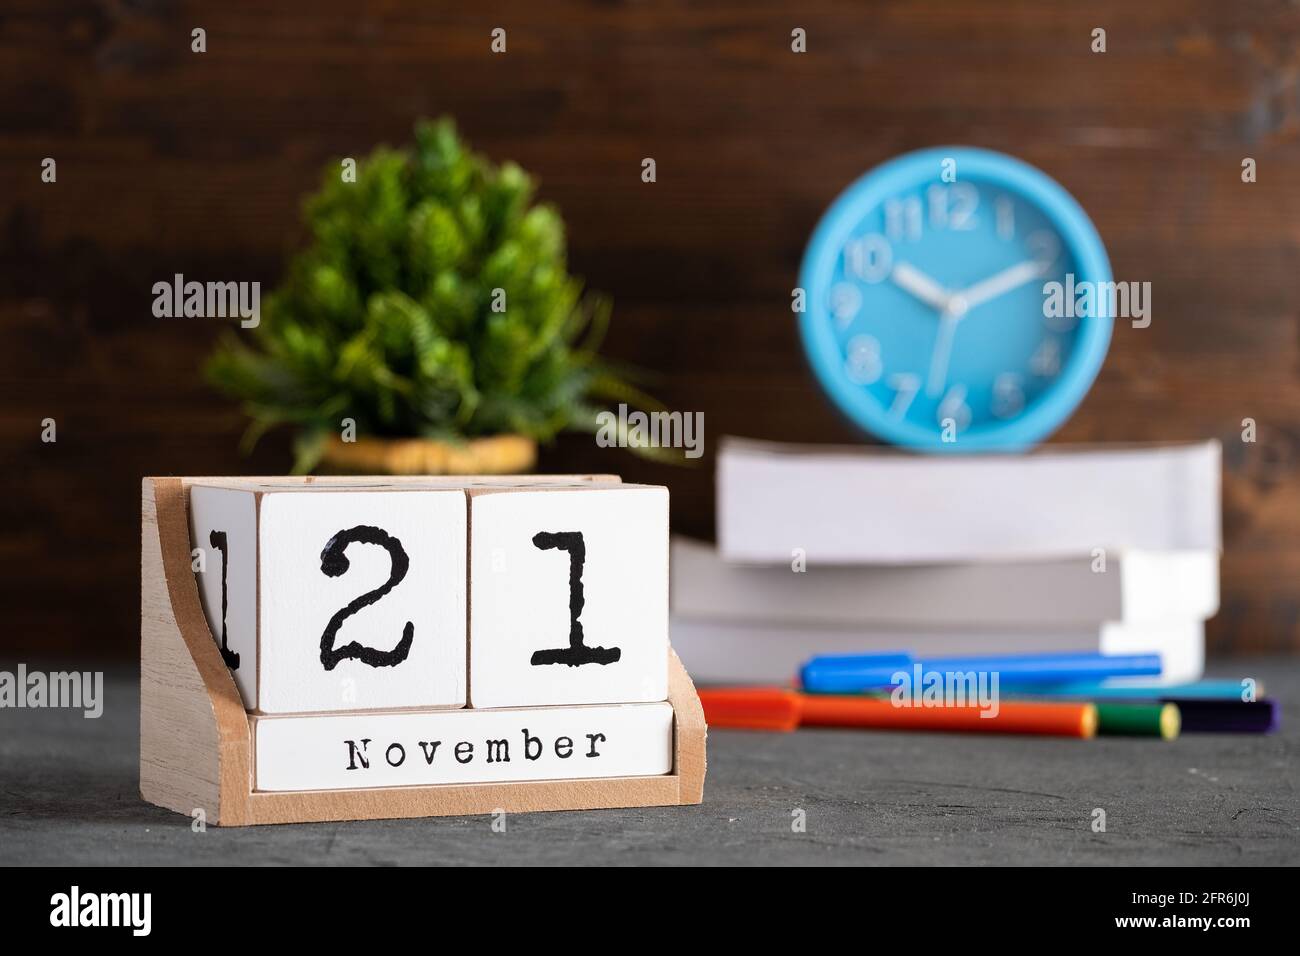 21 novembre. Calendrier cubique en bois de novembre 21 avec objets flous sur fond. Banque D'Images